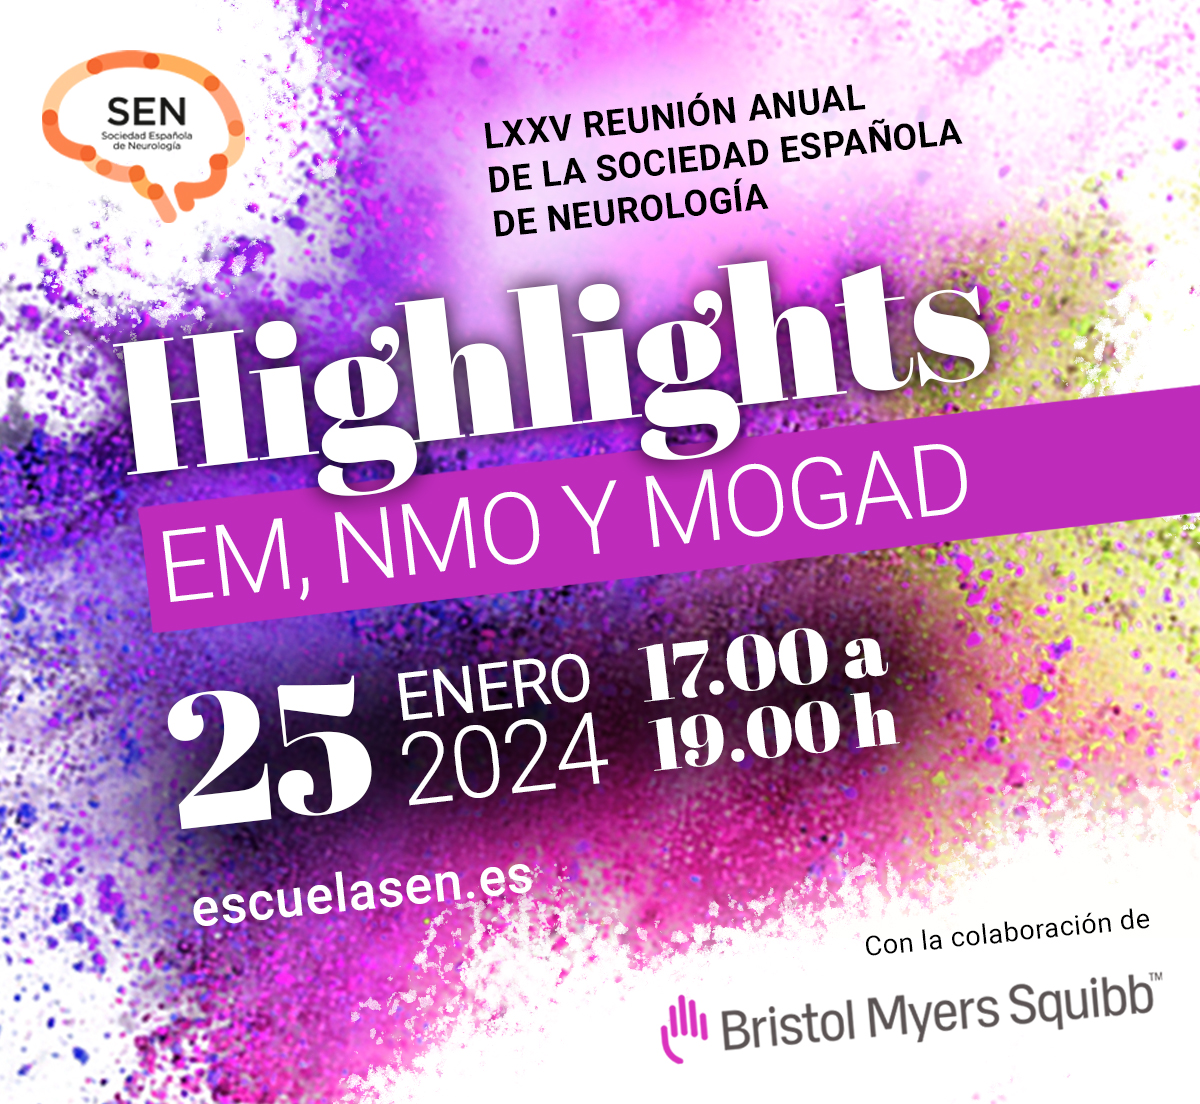 Este jueves 25 de enero a las 17.00 horas no te pierdas el seminario web #highlightsSEN. Una actualización en #EsclerosisMúltiple, NMO y MOGAD con los Dres. @belen_caminero, @mirallesneuro, @juancuelloneuro y Yolanda Blanco. Registro libre👇 escuelasen.es/hl-em-nmo-moga… @BMSIberia